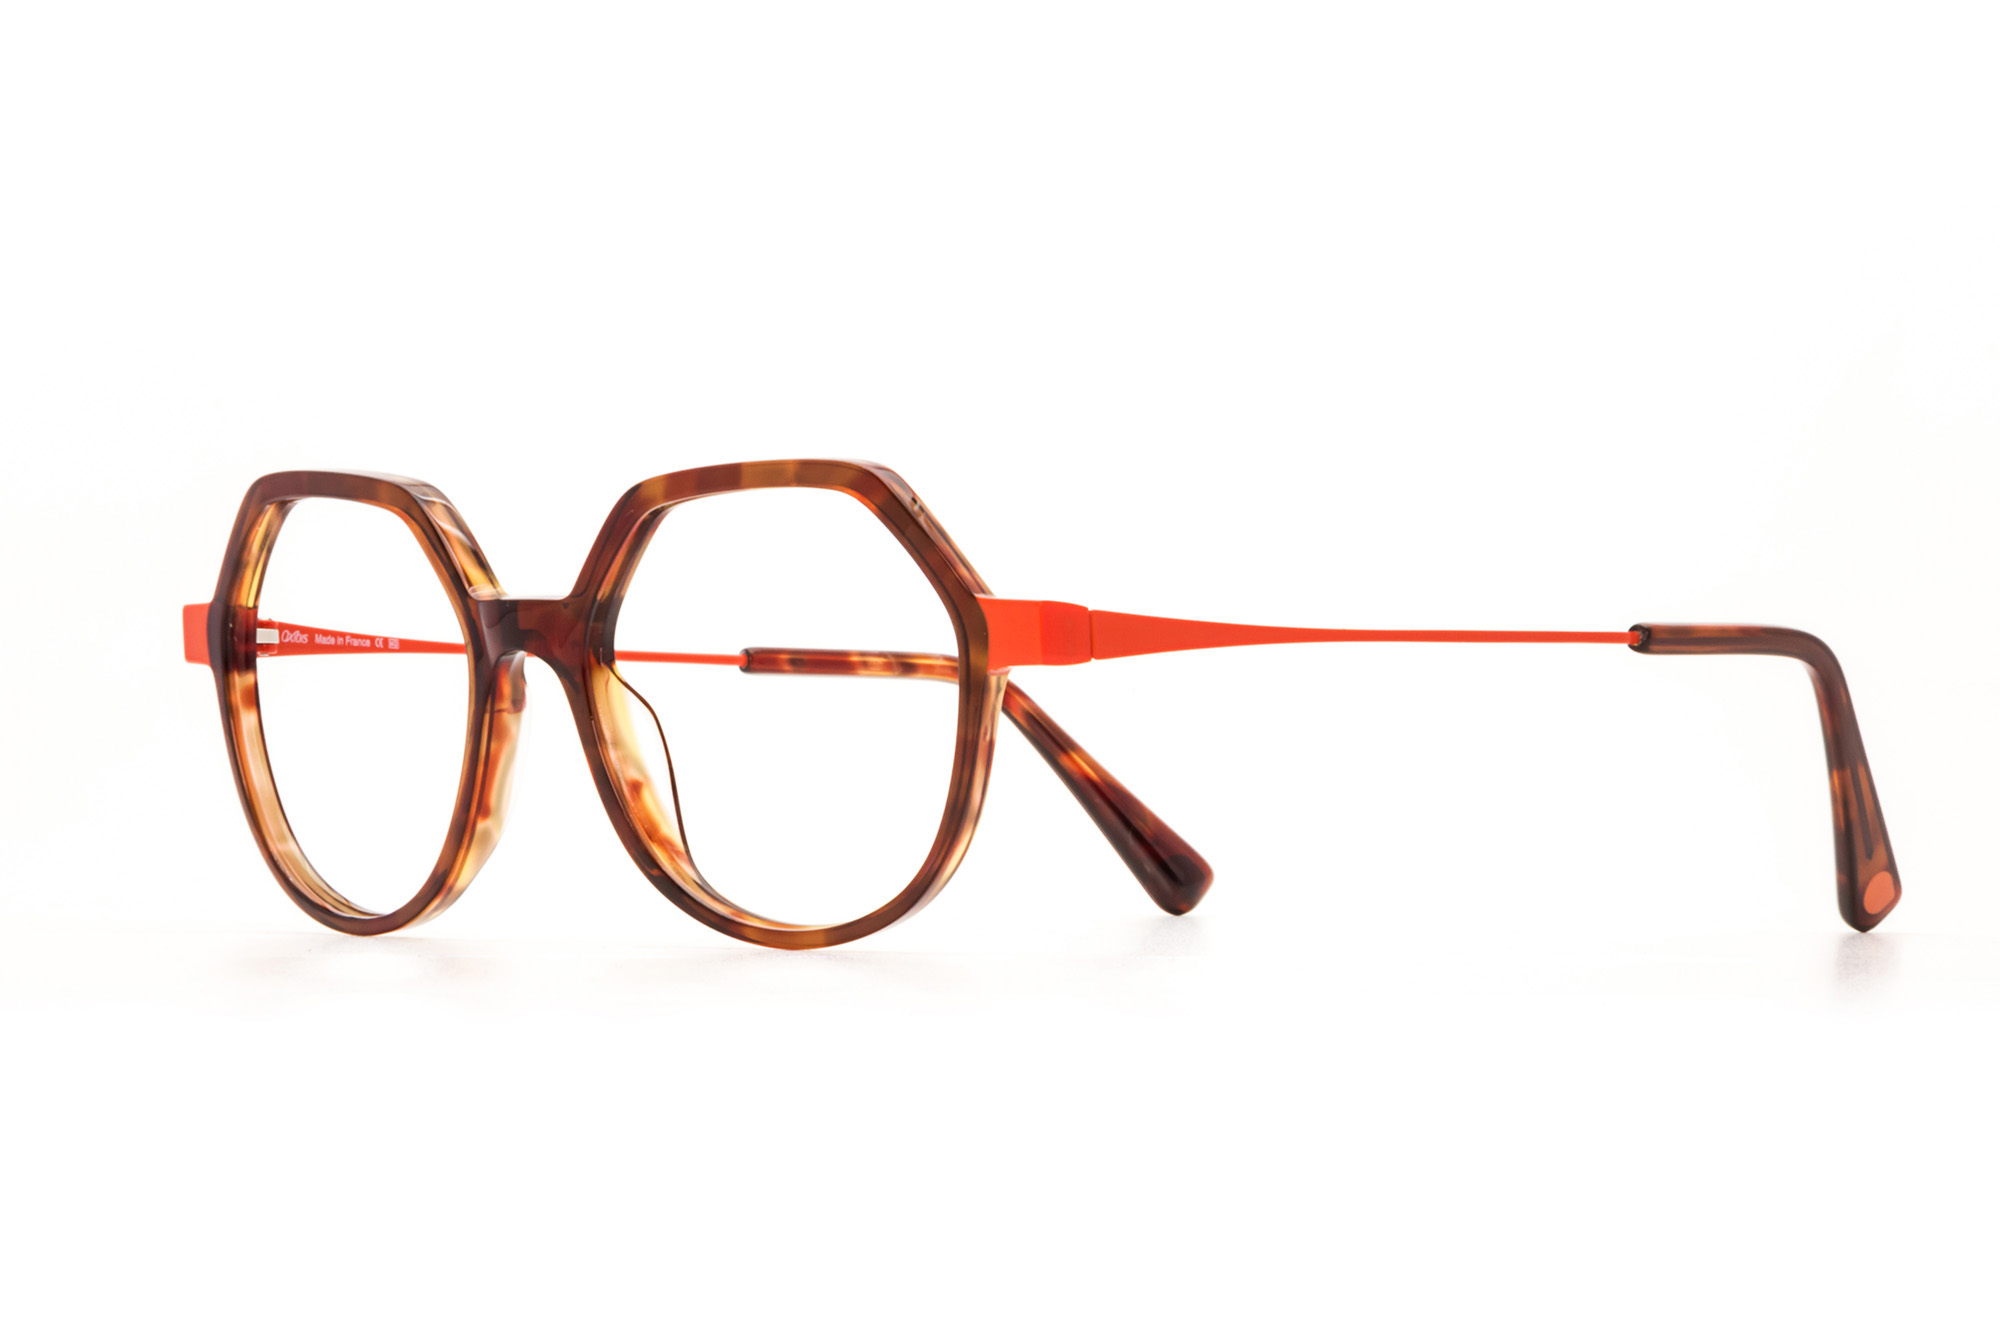 Kullanıma hazır optik tarzda işlenmiş camları ve optik uyumlu çerçevesiyle Oxibis Tango TA3C5 orta ekartman kahvrengi ve turuncu renkli yuvarlak model kadın gözlüğünü optisyen veya gözlükçülerin sunacağı numarasız veya numaralı cam özelleştirmeleriyle size en yakın gözlükçüden satın alabilirsiniz.